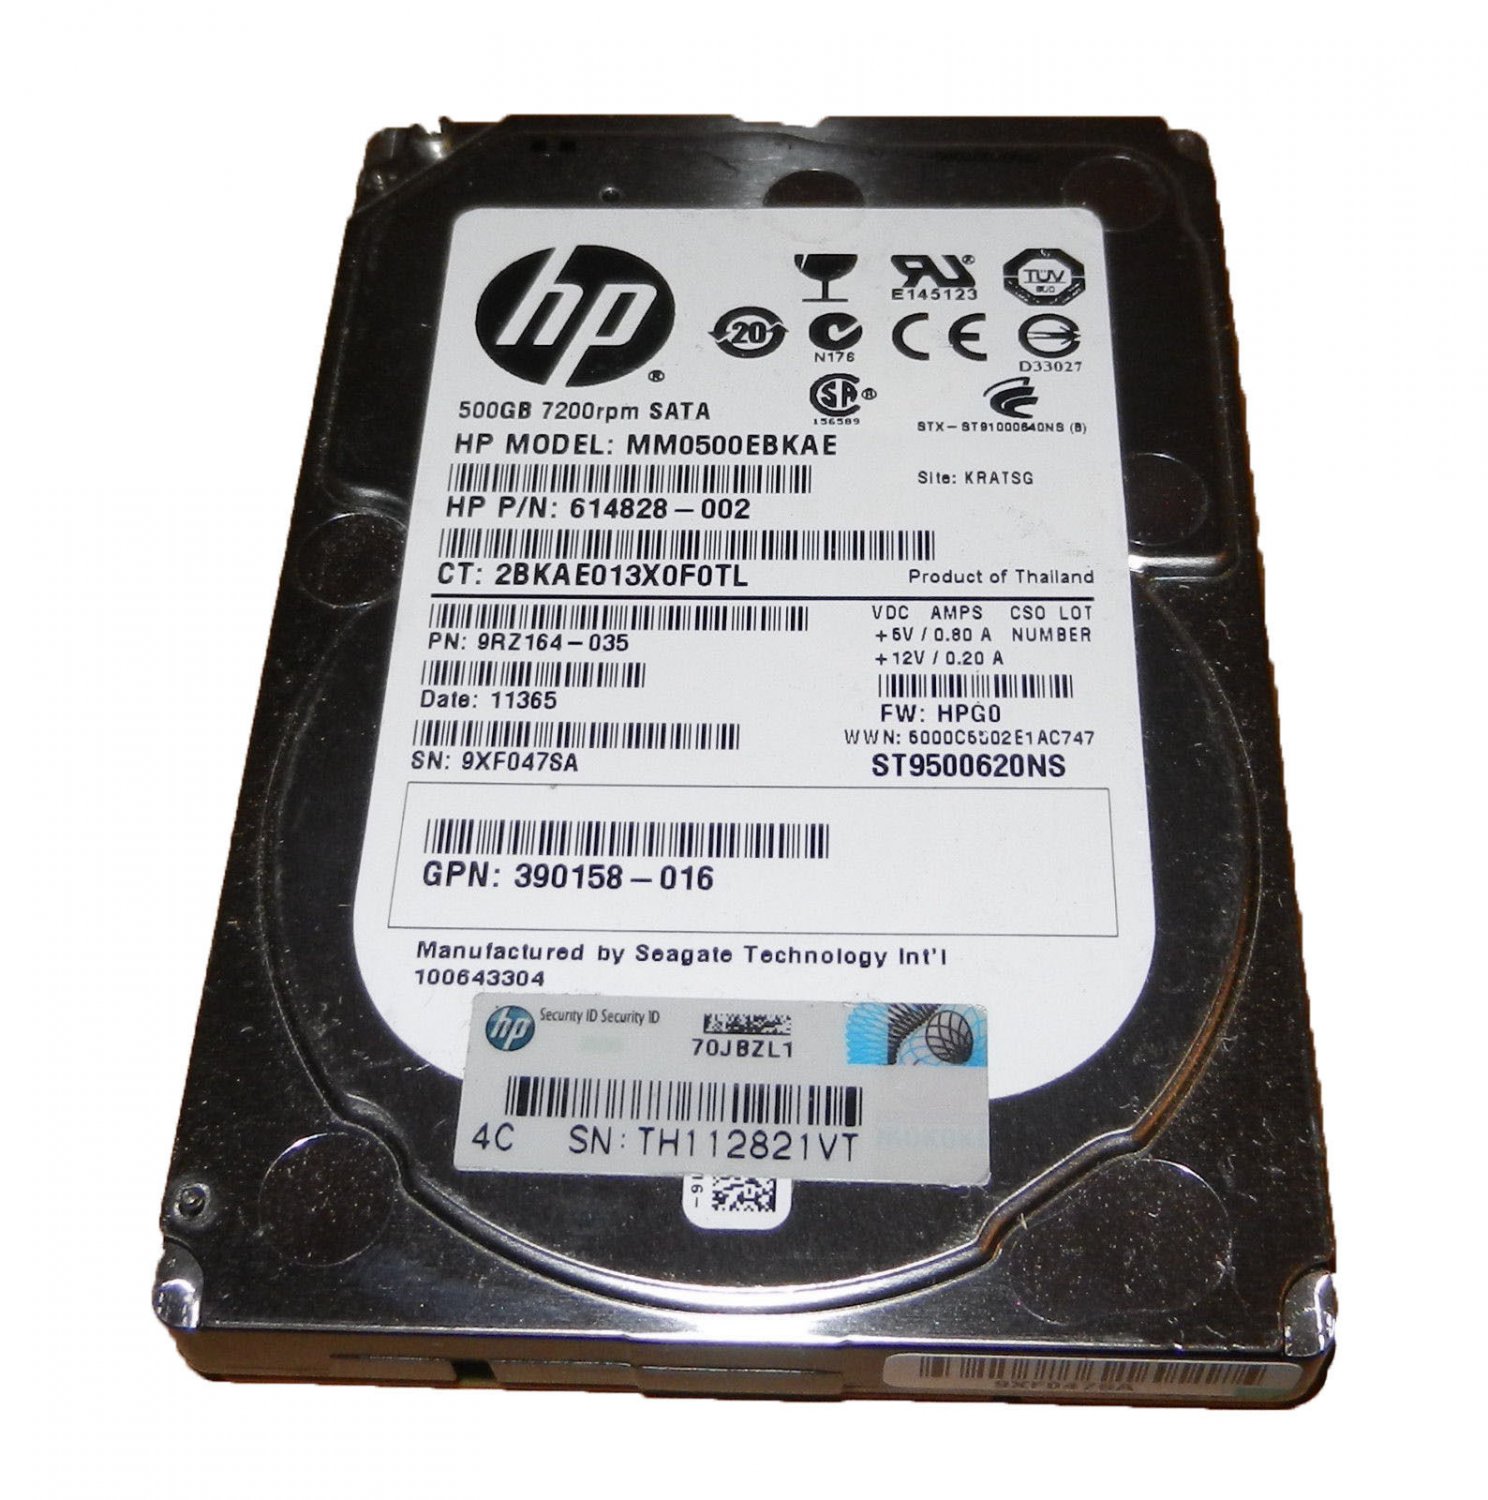 HP 508035-001 500GB SATA 7.2K RPM 2.5 HD - 390158-016， 507749-001